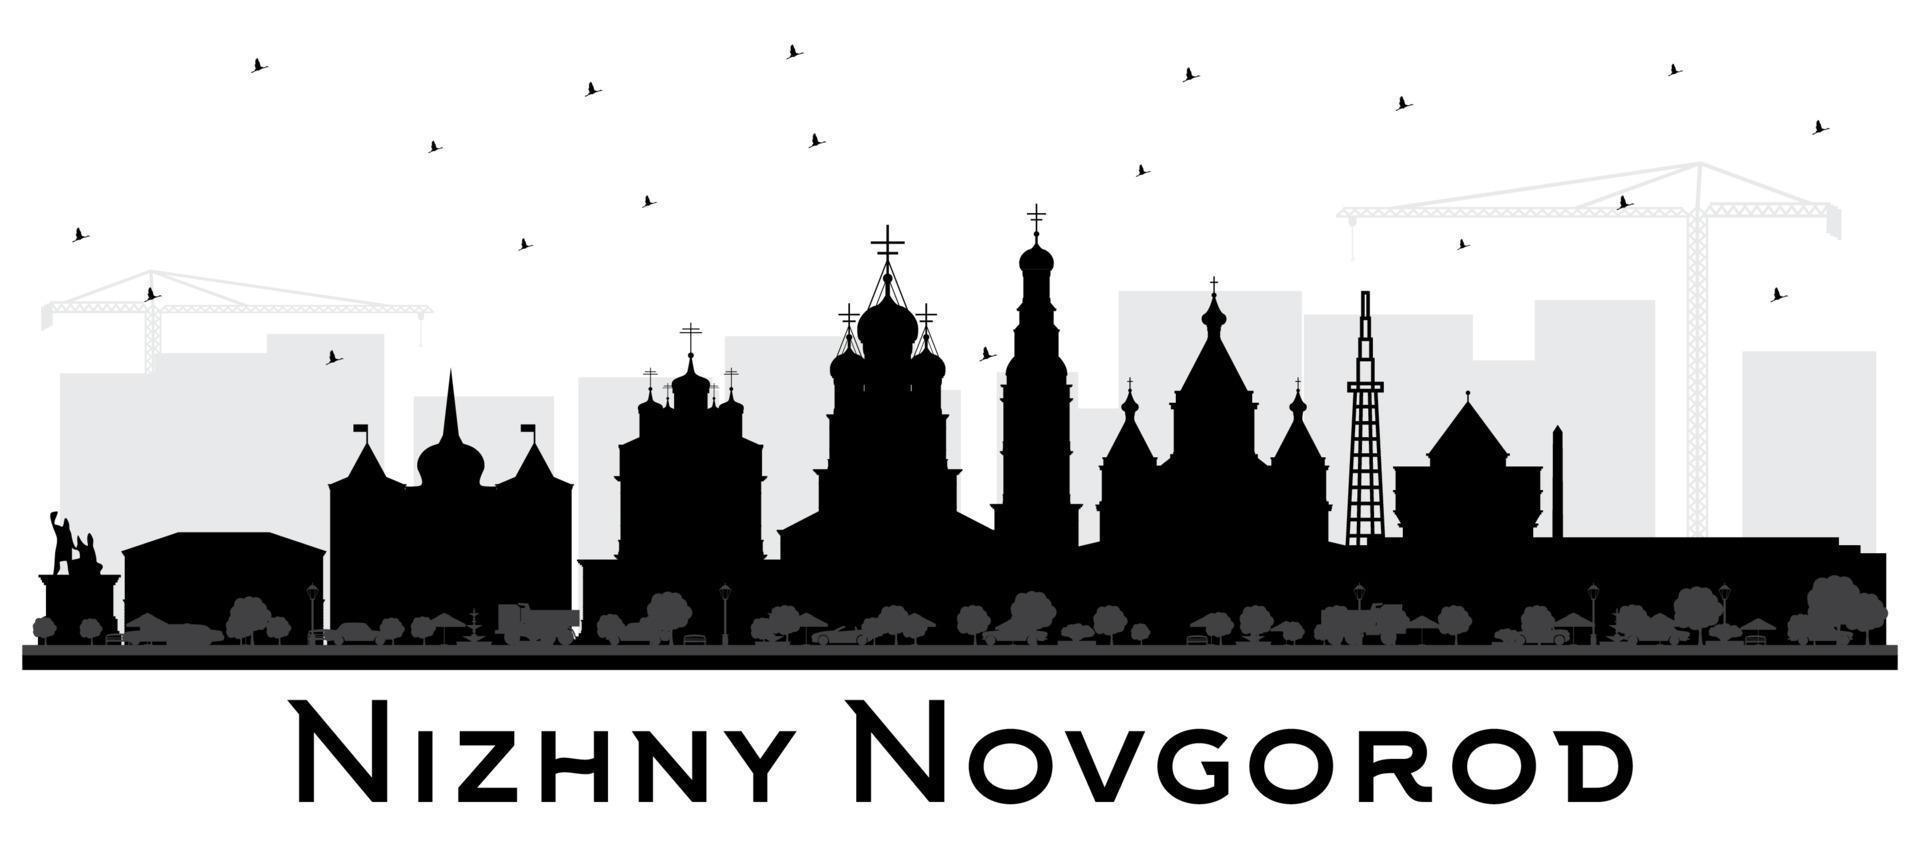 nizhny novgorod ryssland stad horisont silhuett med svart byggnader isolerat på vit bakgrund. vektor